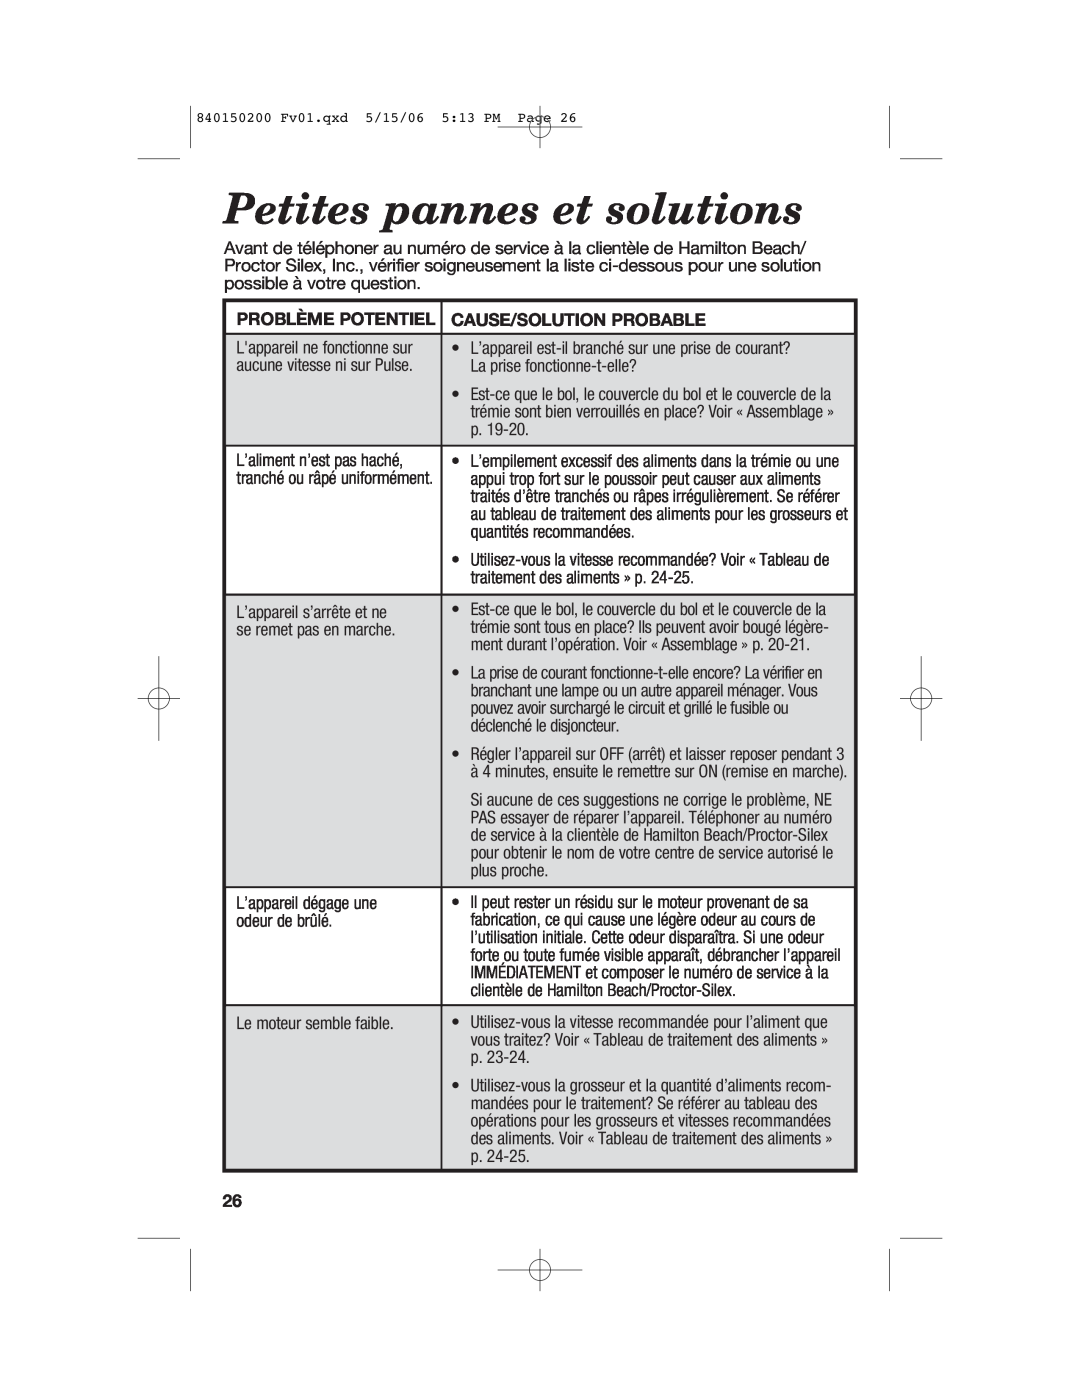 Proctor-Silex 840150200 manual Petites pannes et solutions, Problème Potentiel, Cause/Solution Probable 